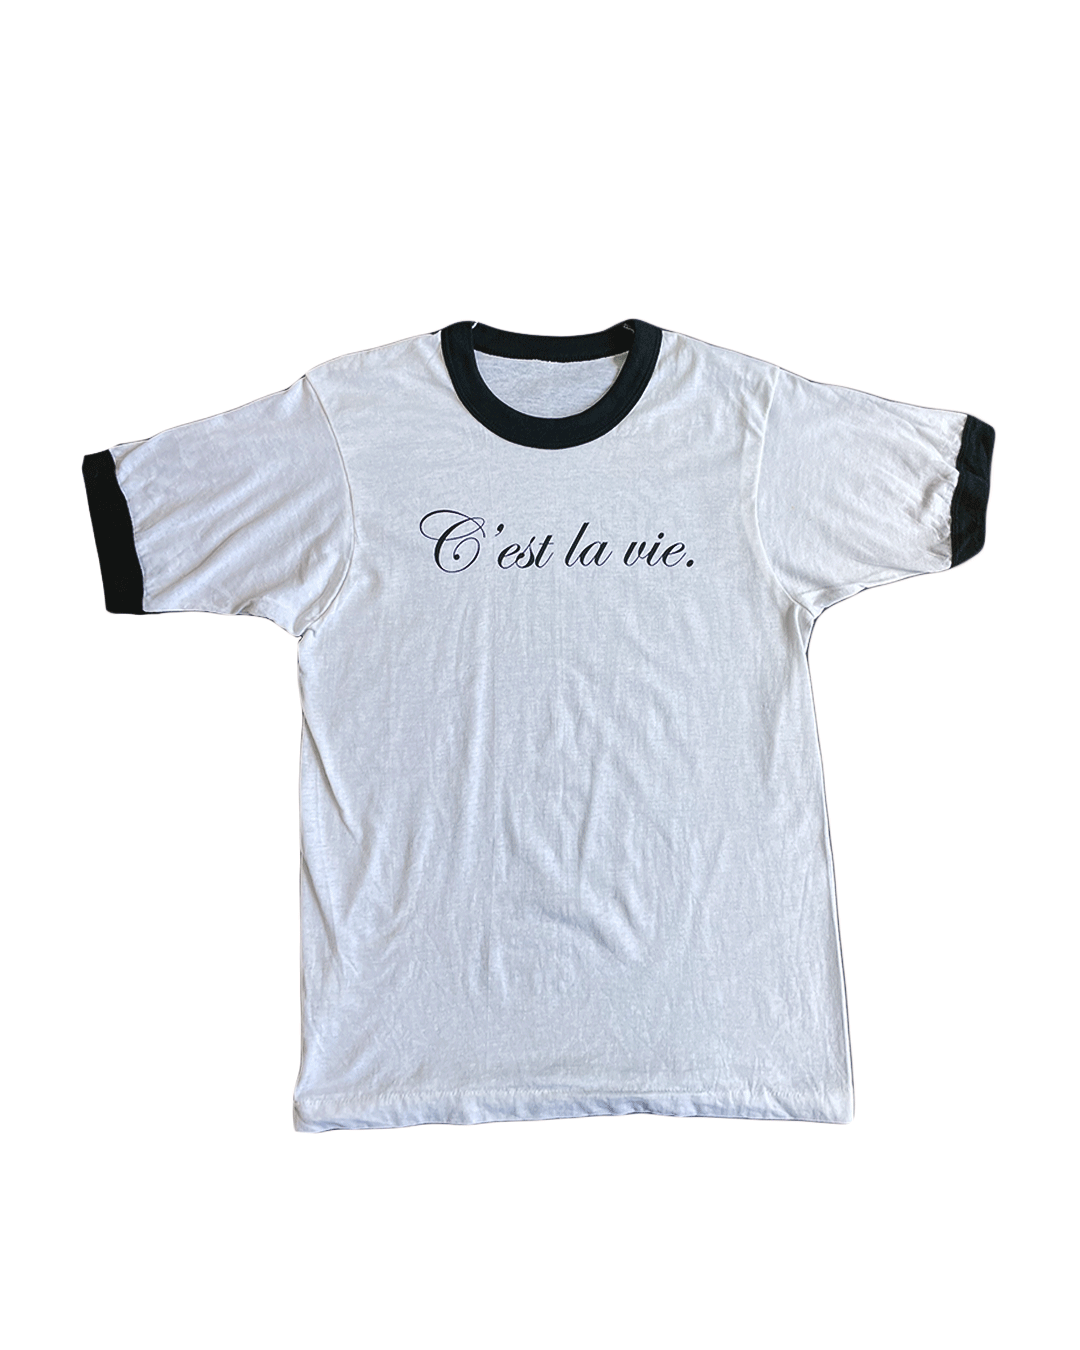 prngrphy Black 'C'est la vie.' Ringer T-Shirt